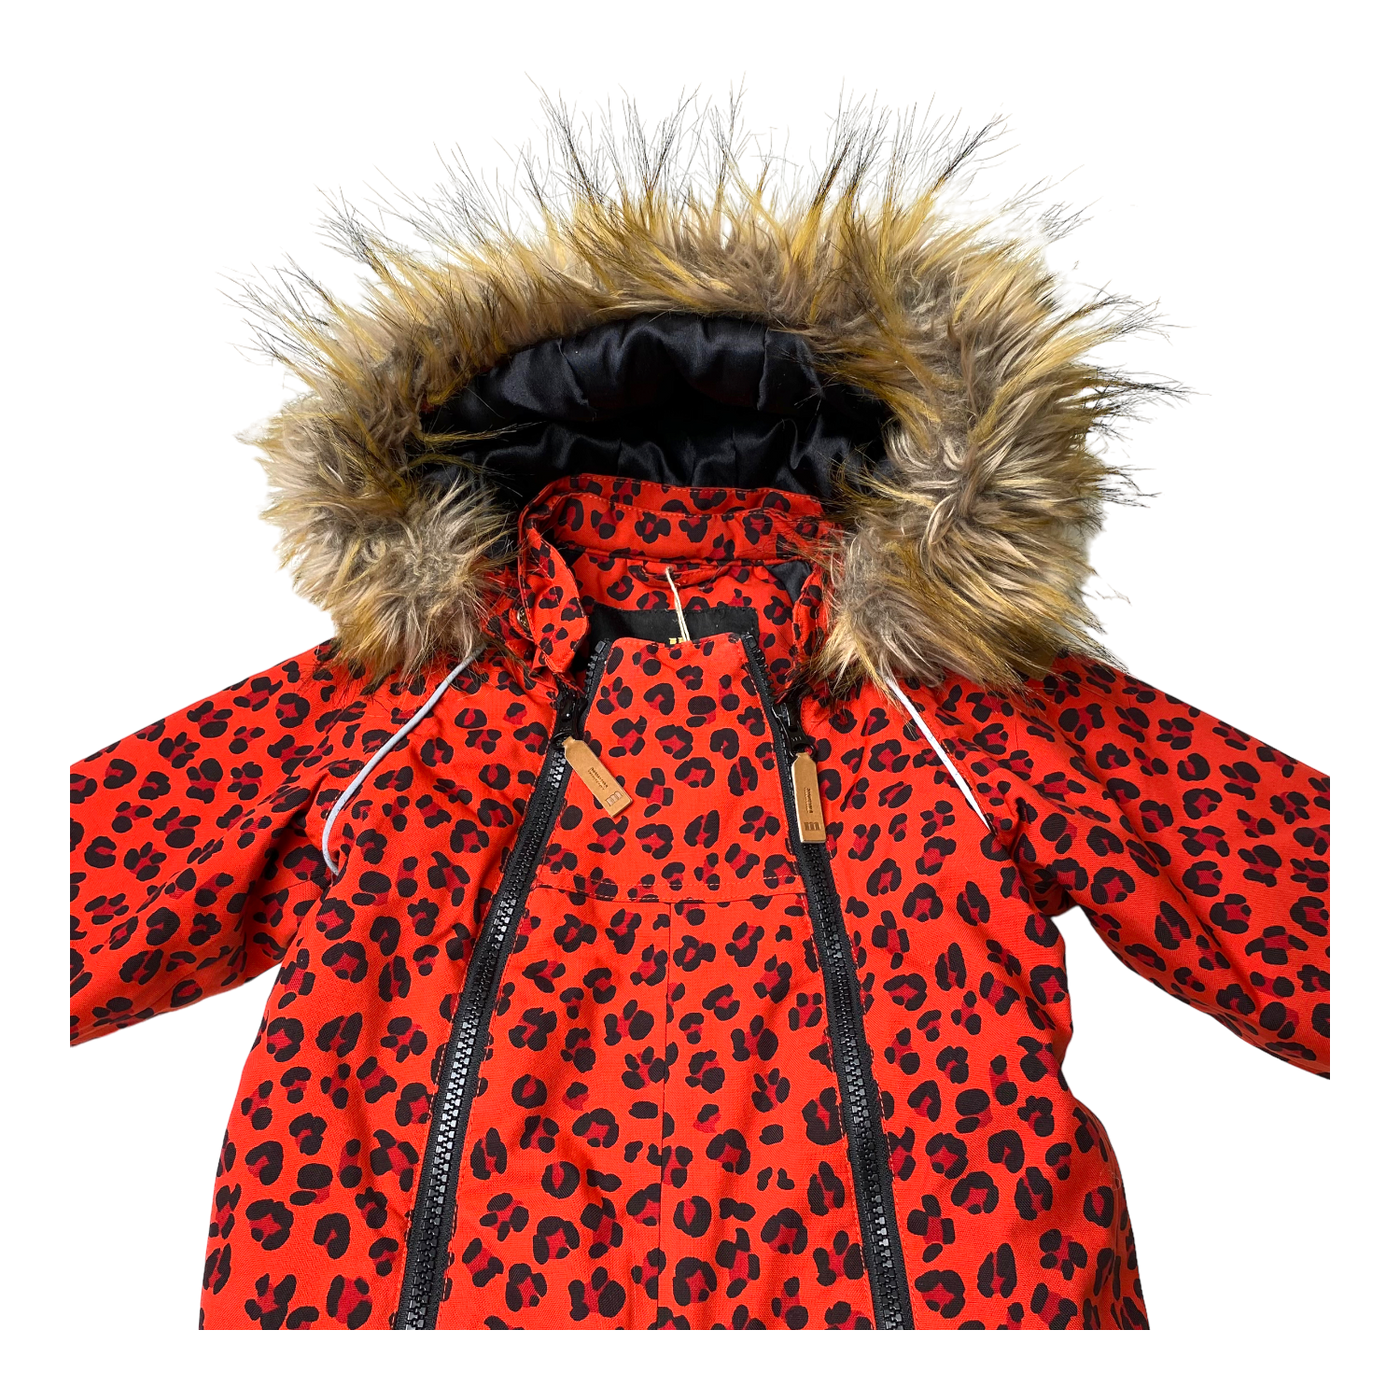 Mini Rodini kebnekaise winter overall, leopard | 74cm